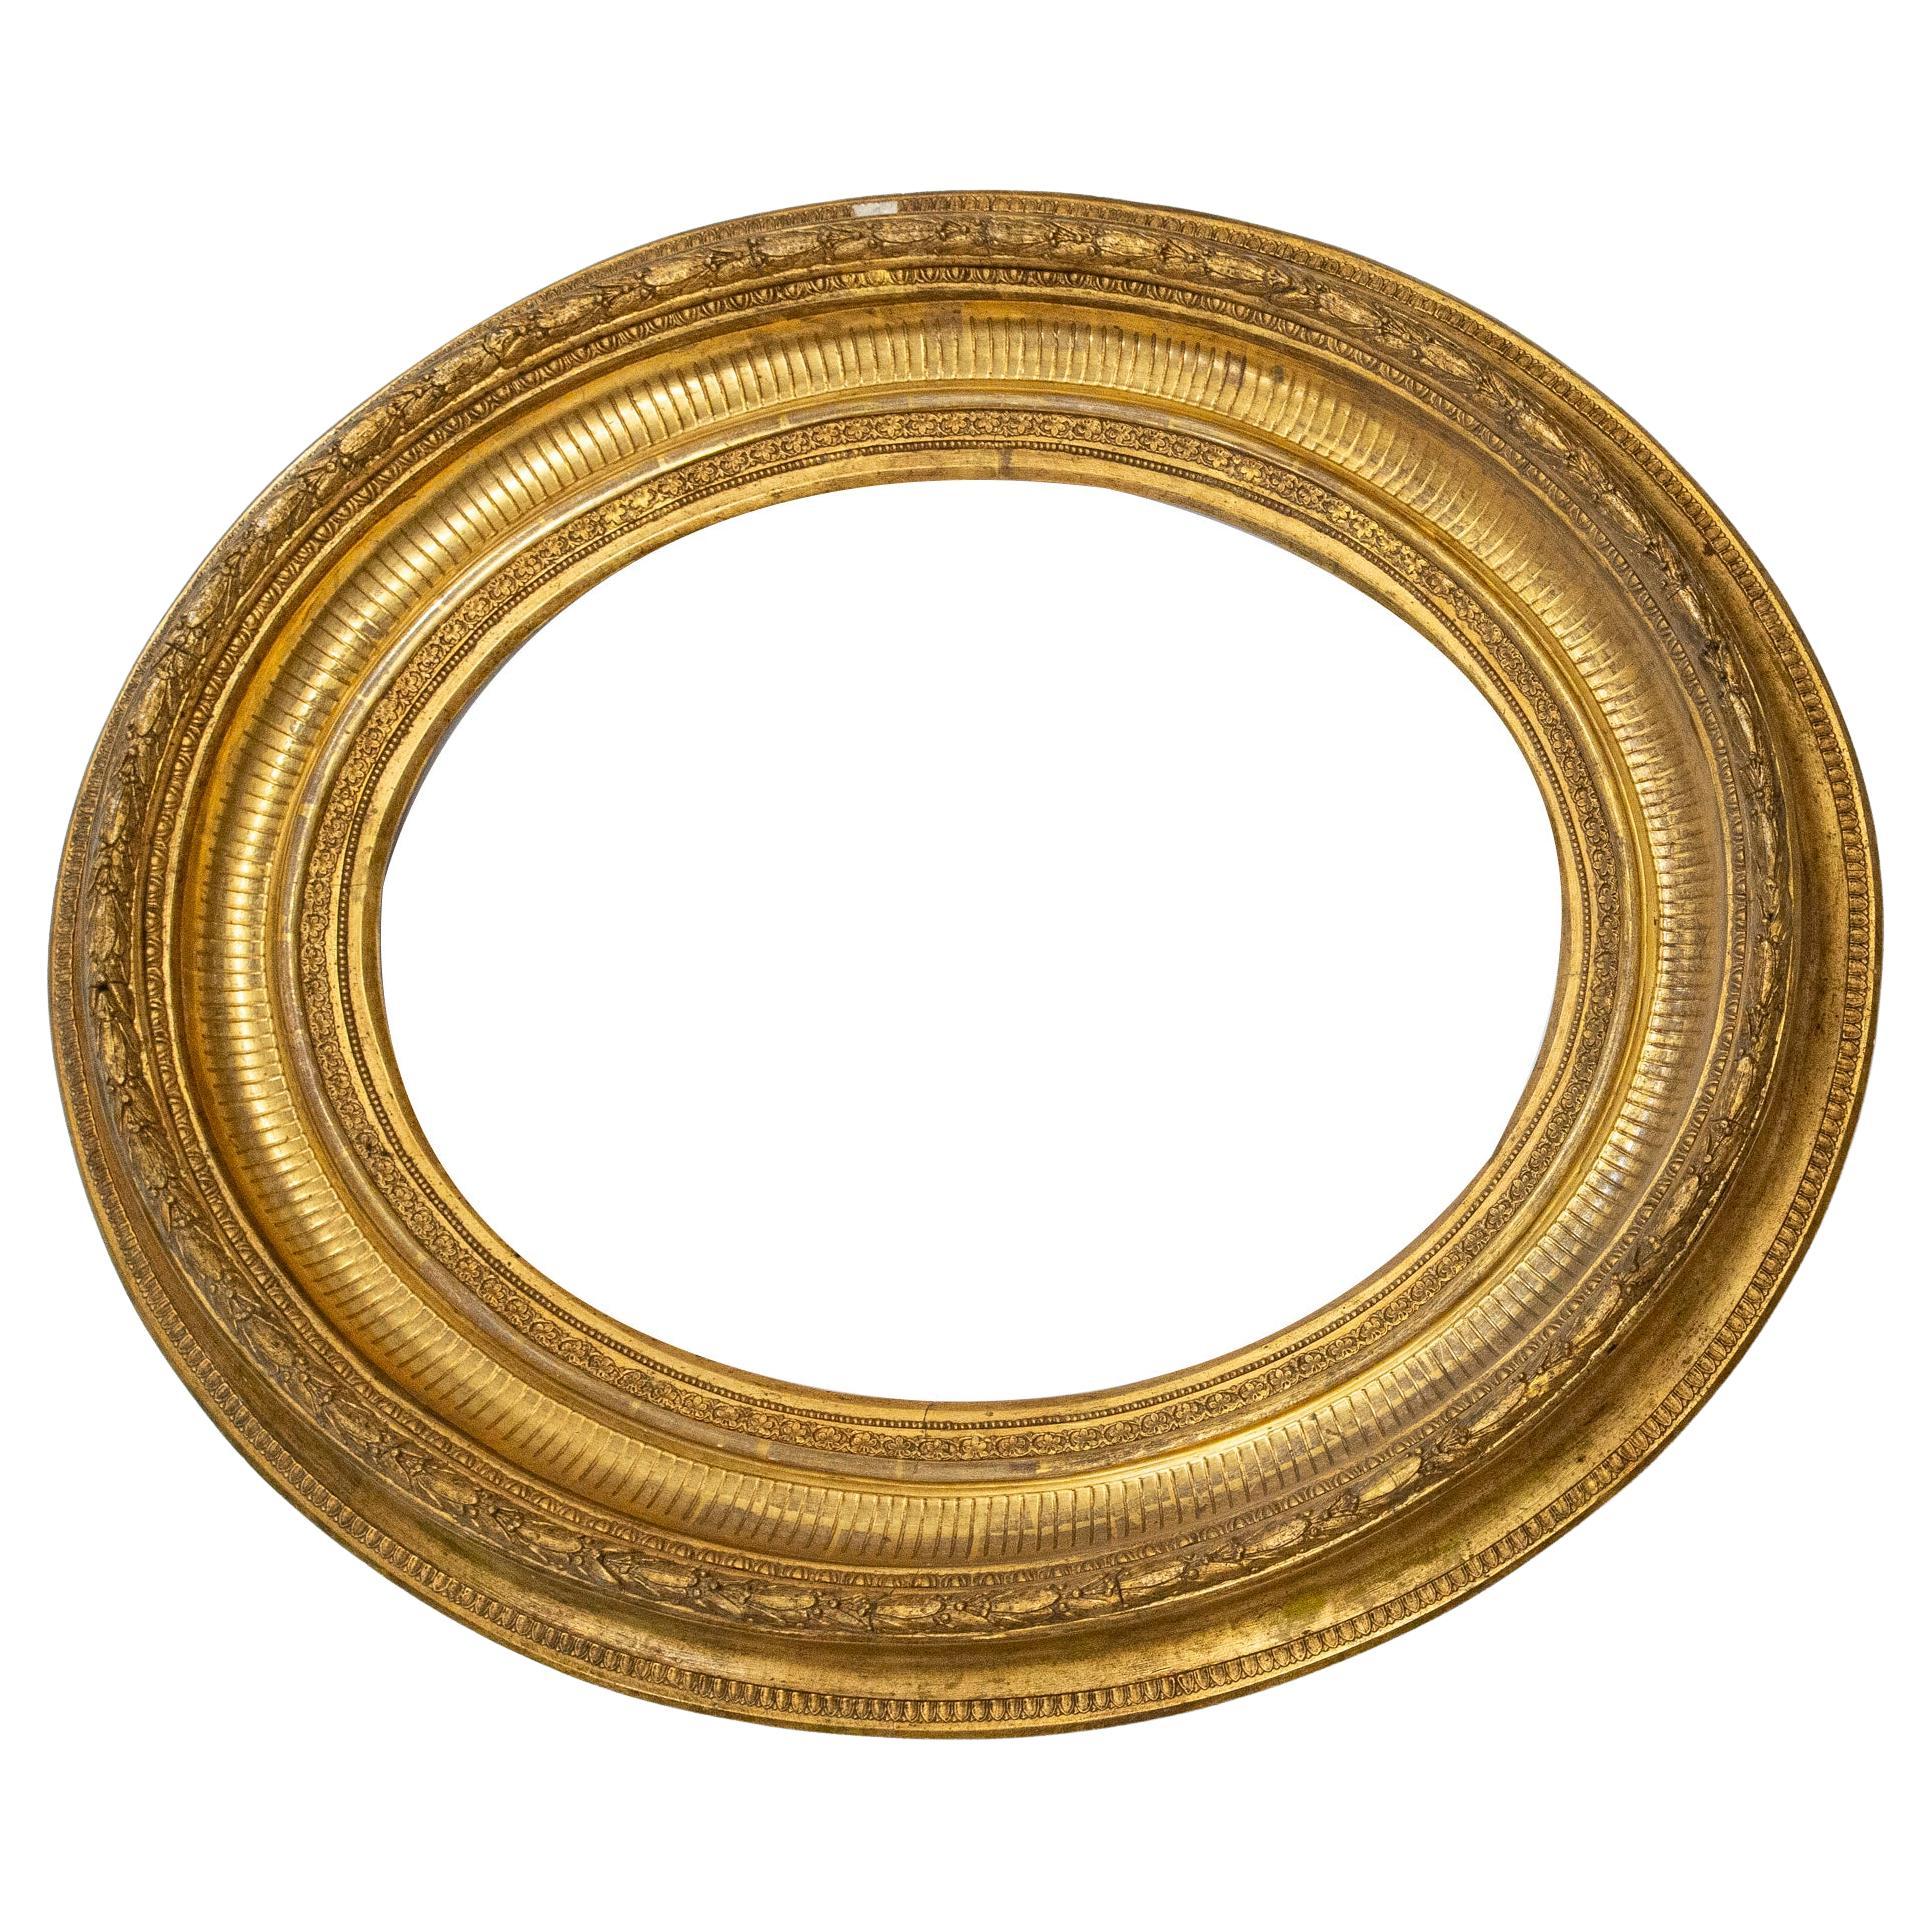 O/6480 - Großer goldener ovaler Rahmen, perfekt für einen Spiegel: es ist besser, den Spiegel selbst zu montieren, wegen der Transportprobleme aus Italien. Auf Anfrage kann ich das aber tun.
Es ist sehr wichtig und elegant, es kann eine Wand